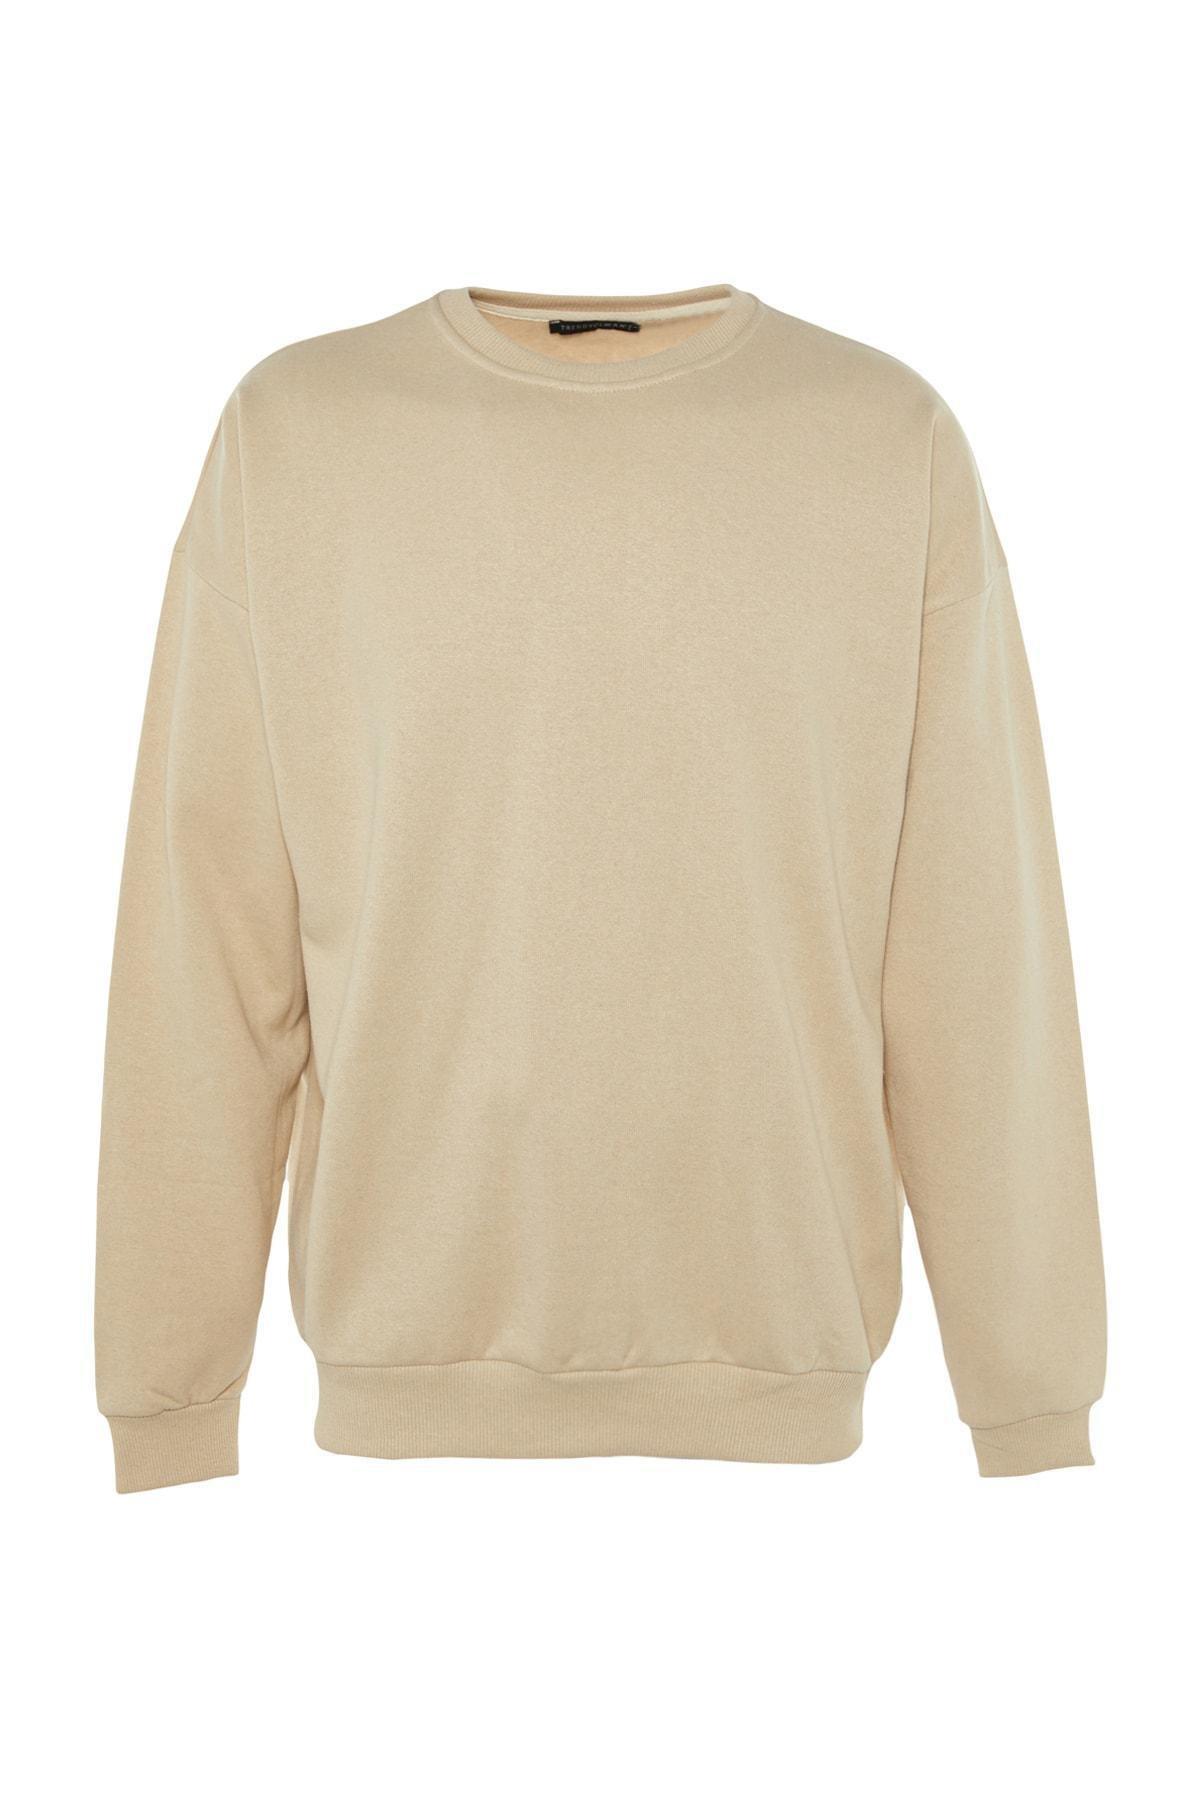 Trendyol - Beige Printed Oversize Sweatshirt